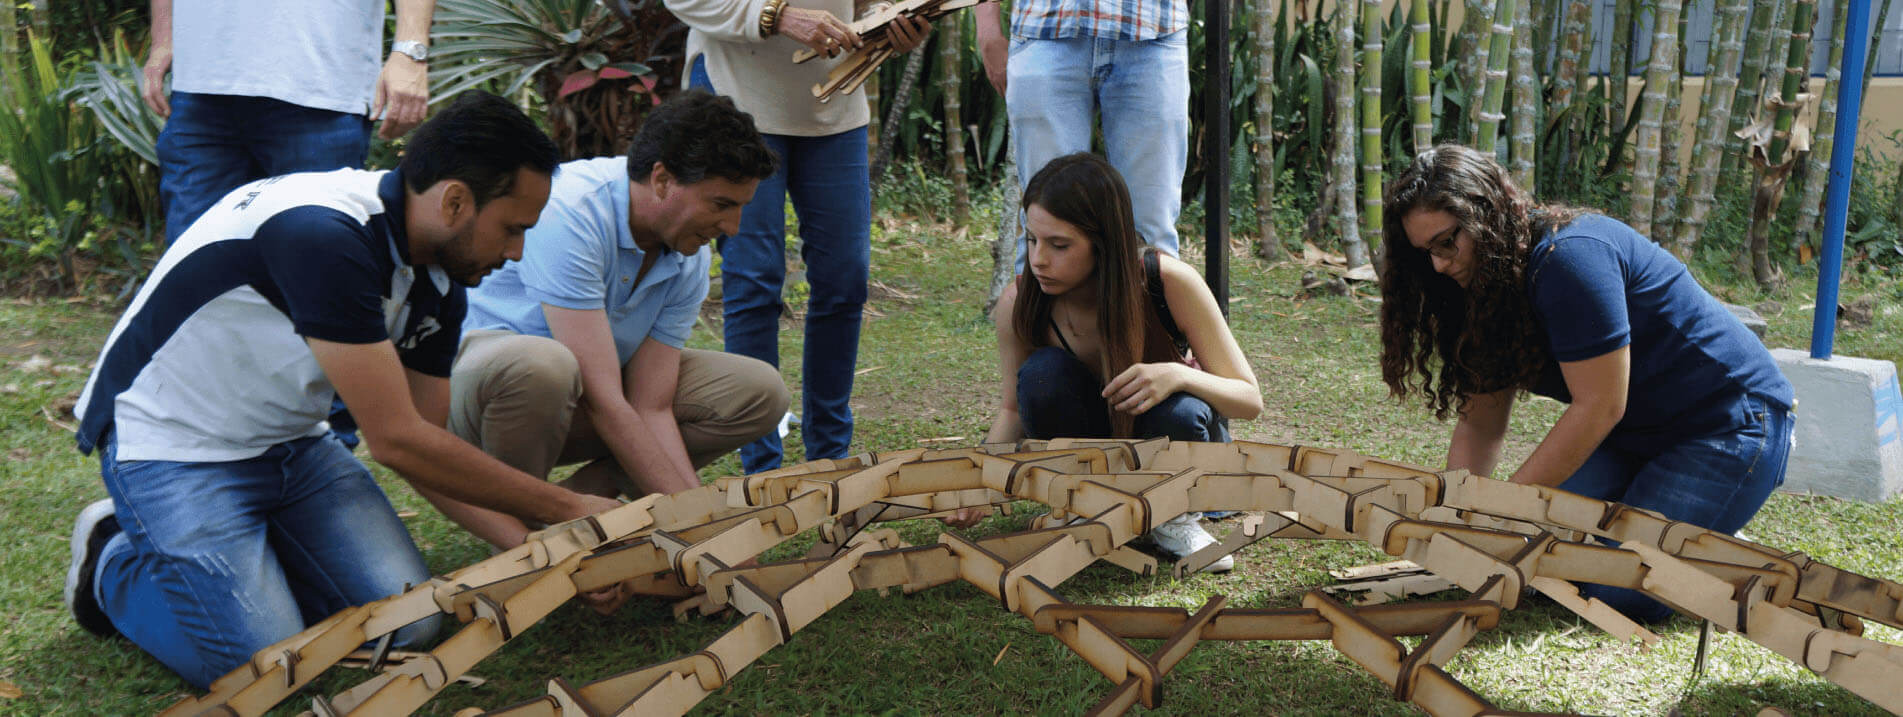 Estudiantes de la Escuela de Verano construyendo una estructura circular en madera